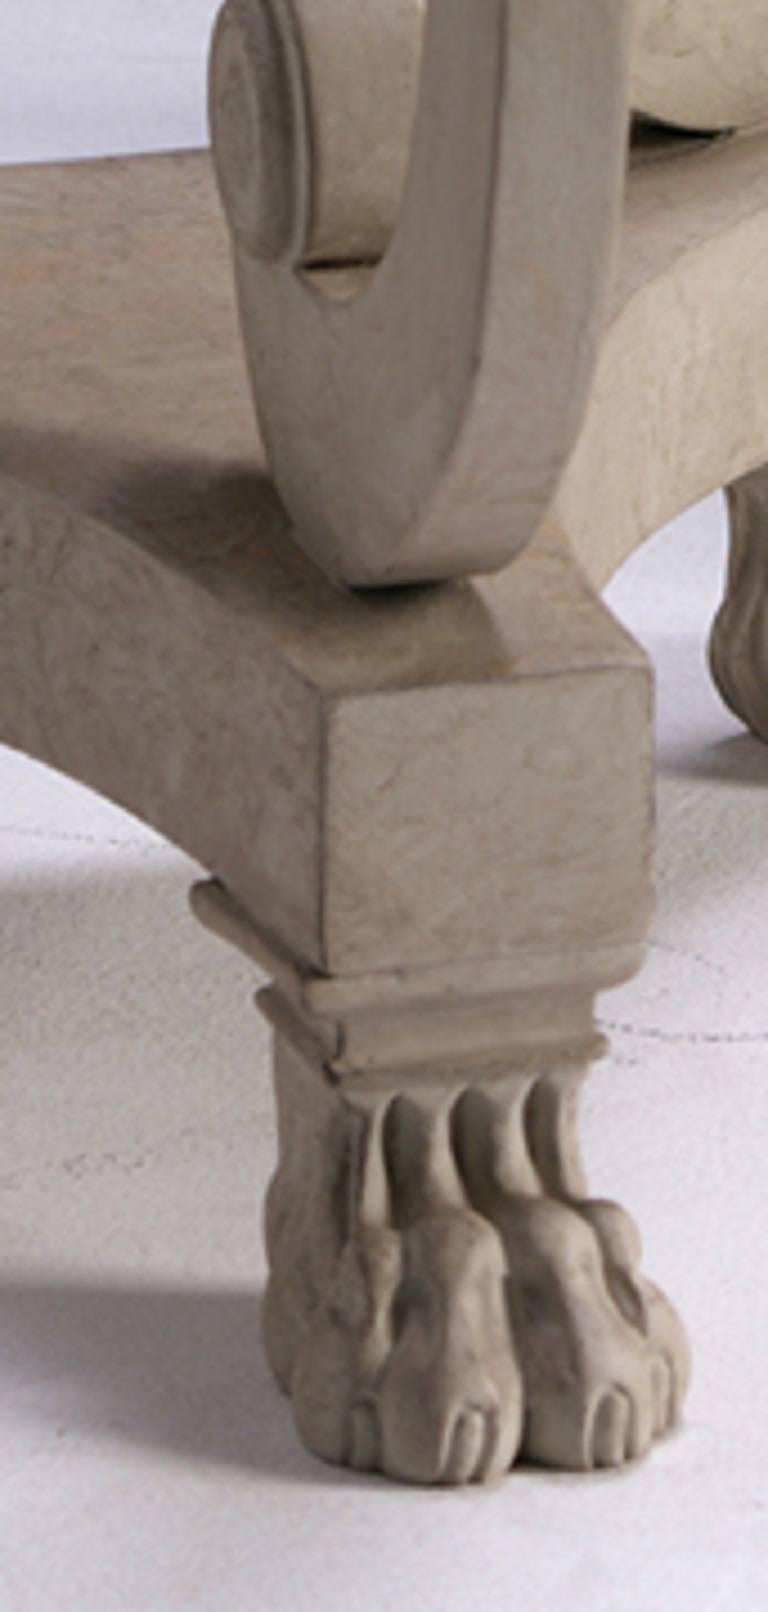 Ein Paar marmorierte Fackeln mit drei Schriftrollen auf tirformierten Sockeln mit geschnitzten Tatzenfüßen. Ausgeführt in einer gealterten, lackierten Steinoberfläche.

Wir arbeiten derzeit mit einer Vorlaufzeit von 30-36 Wochen.